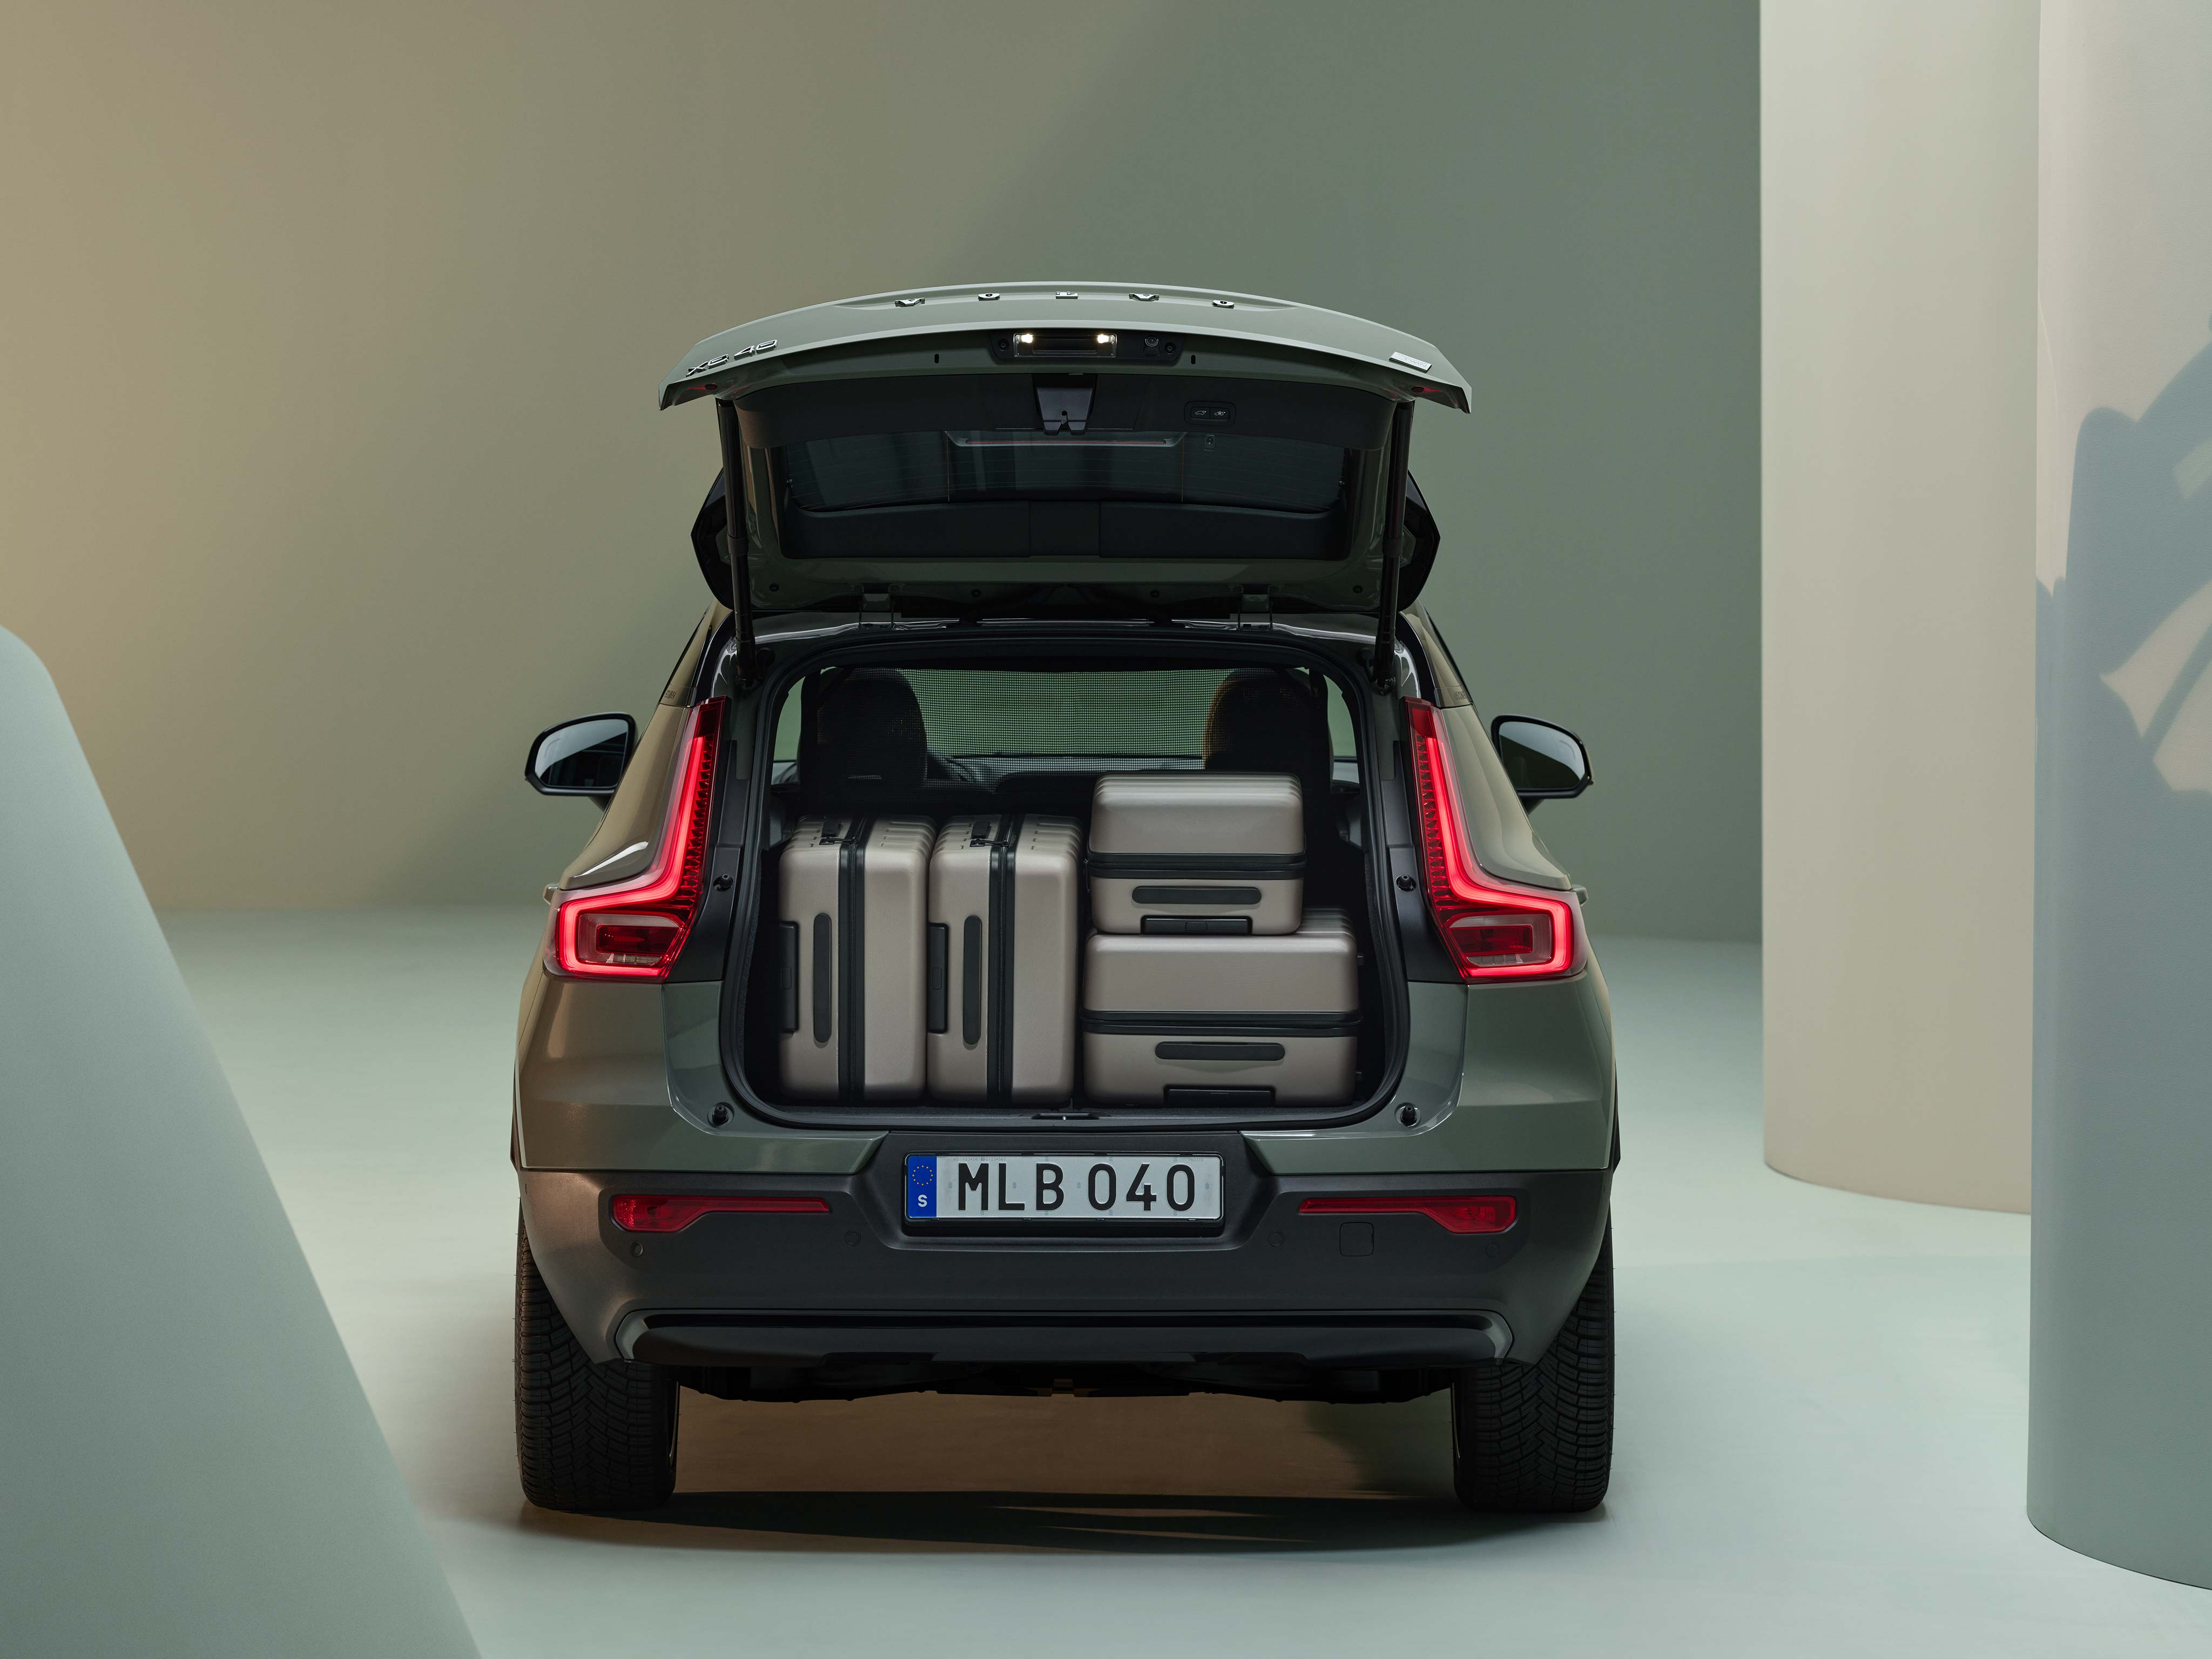 尾部视角展示沃尔沃 SUV 宽敞的后备厢及其中多个大号行李箱。